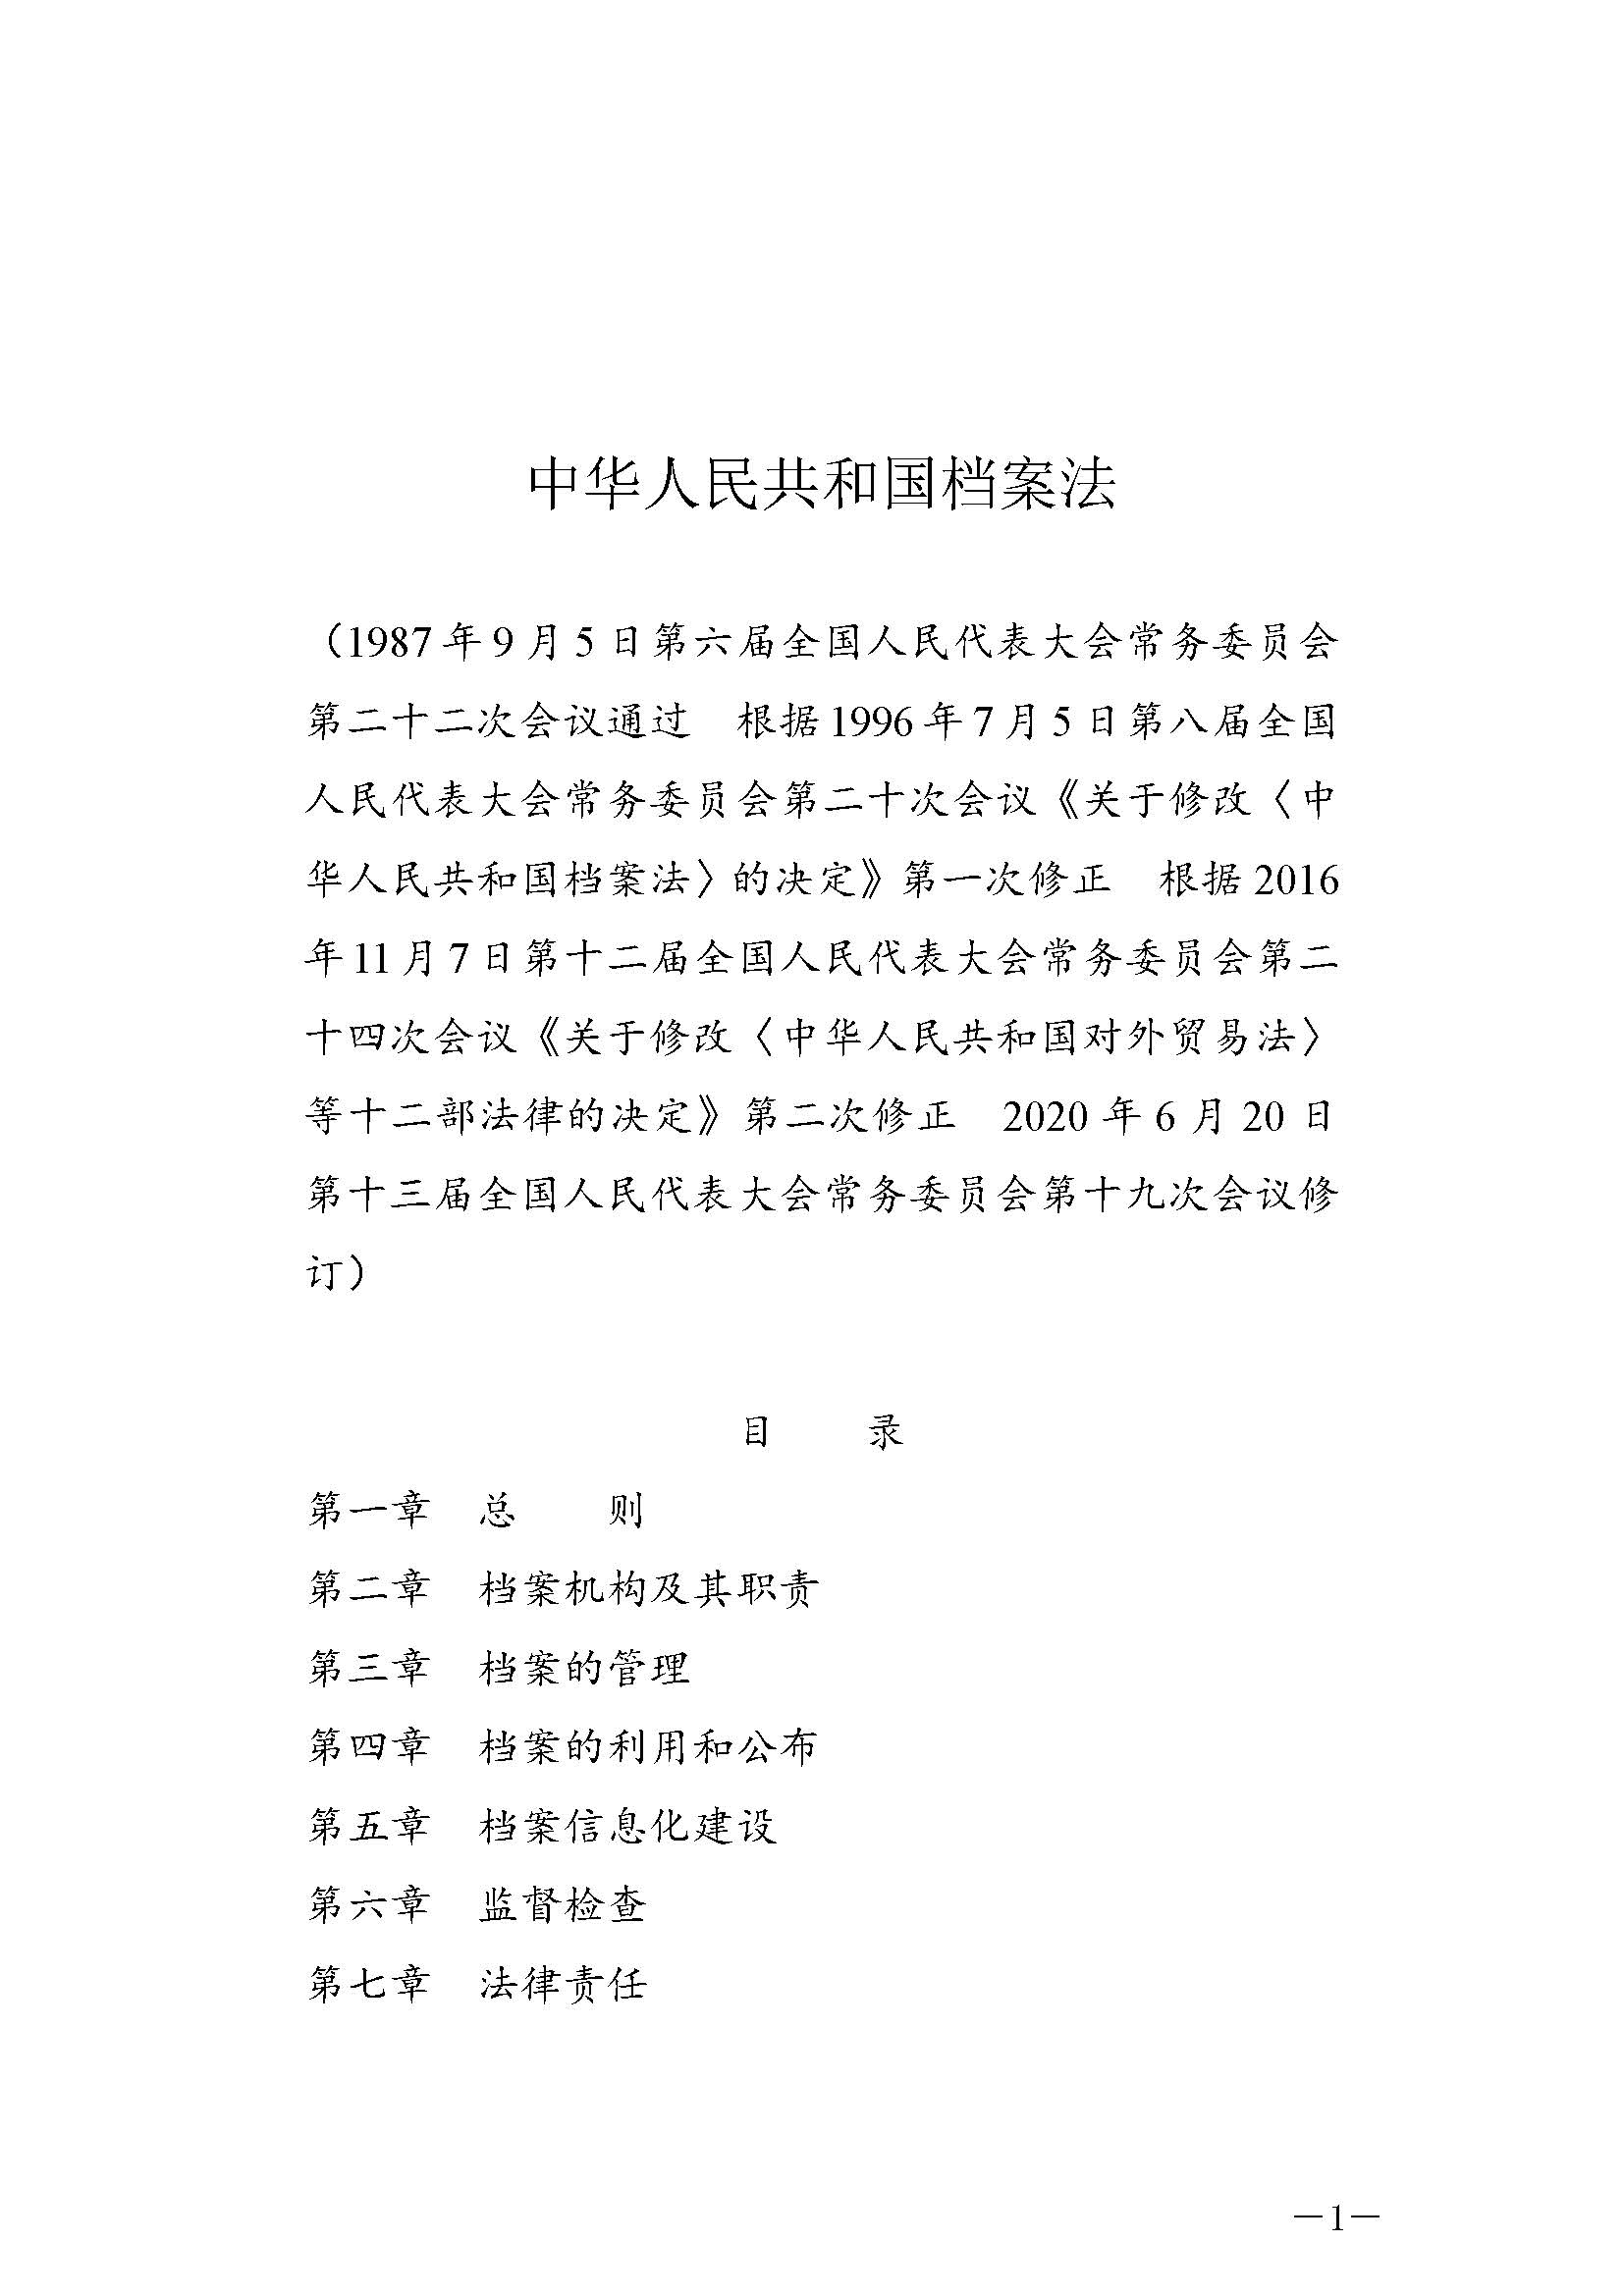 《中华人民共和国档案法》_页面_01.jpg